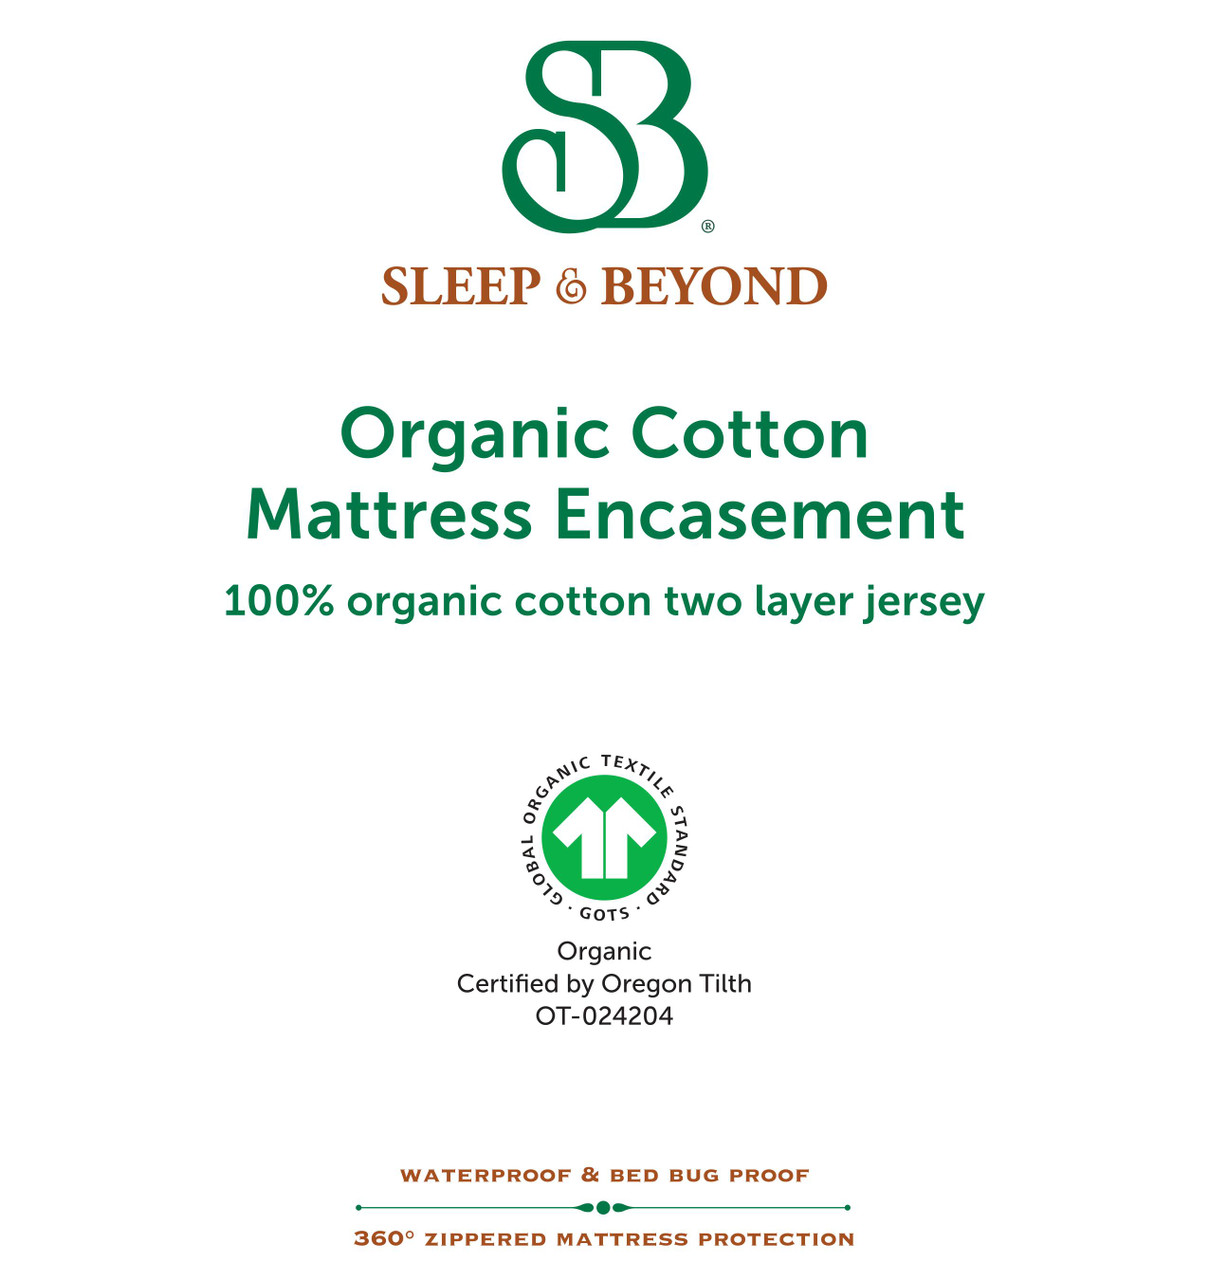 Sleep & Beyond Organic Cotton Waterproof Mattress Encasement Features 2